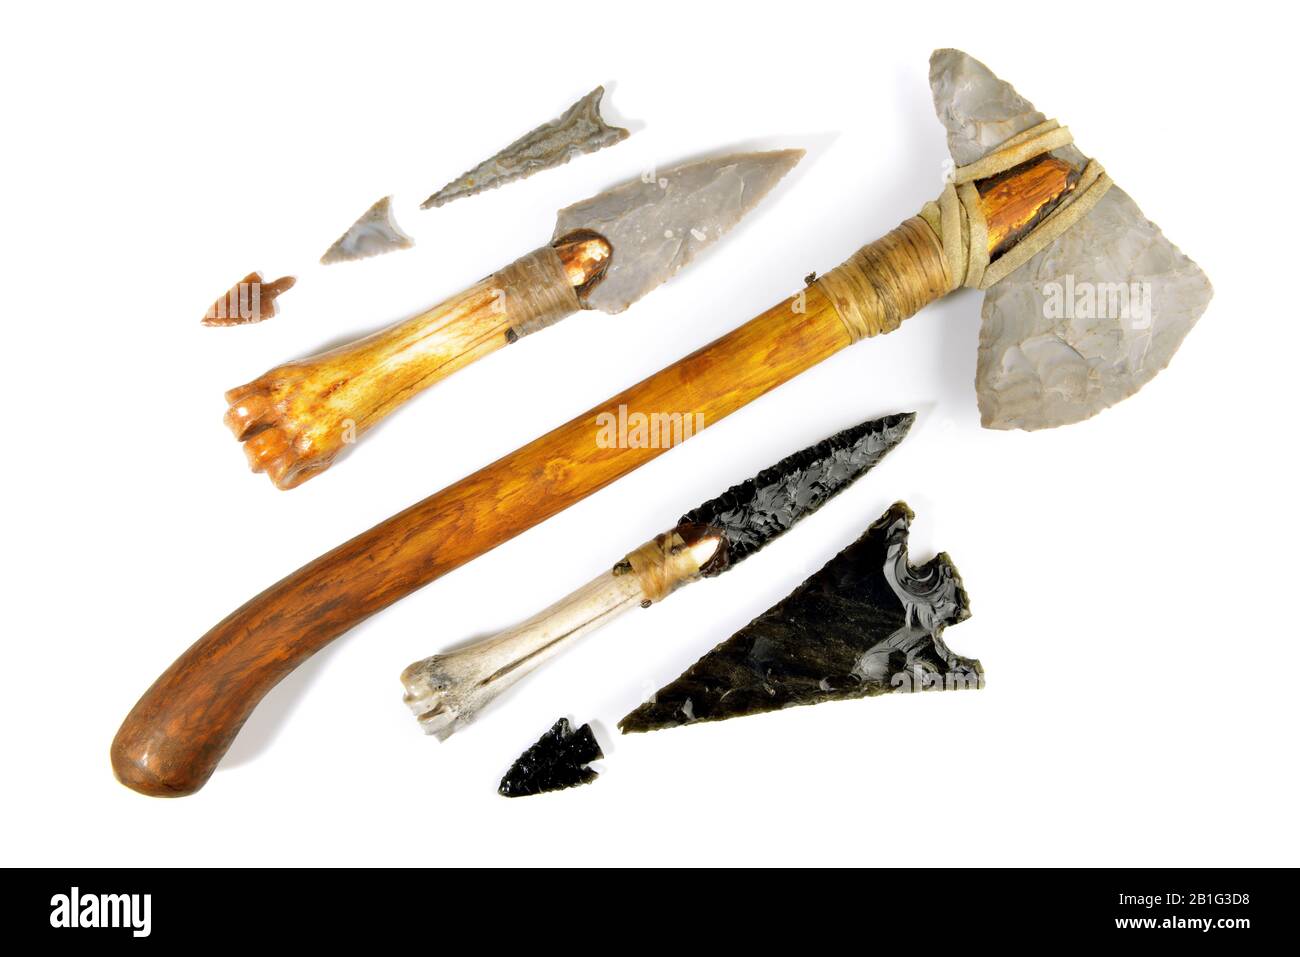 Steinzeitwerkzeuge auf weißem Hintergrund - Steinzeit-Axt, Messer und Pfeile Stockfoto